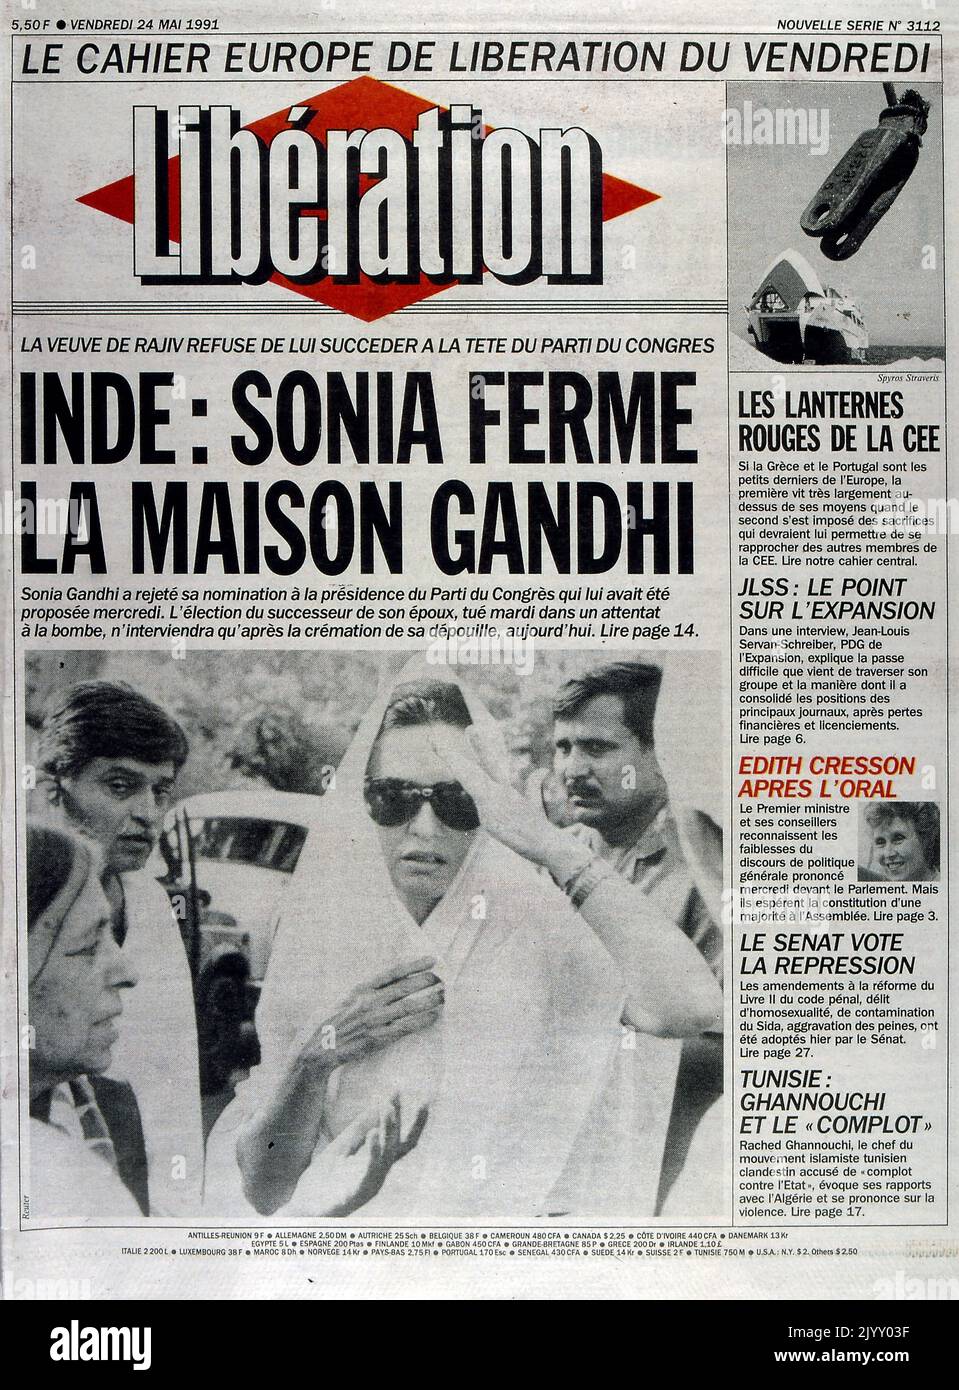 Titelseite von 'Liberation' eine französische Publikation, in der berichtet wird, dass Sonia Gandhi sich weigerte, ihren Mann nach seiner Attentat im Jahr 1991 als Parteivorsitzende des Kongresses zu führen Stockfoto